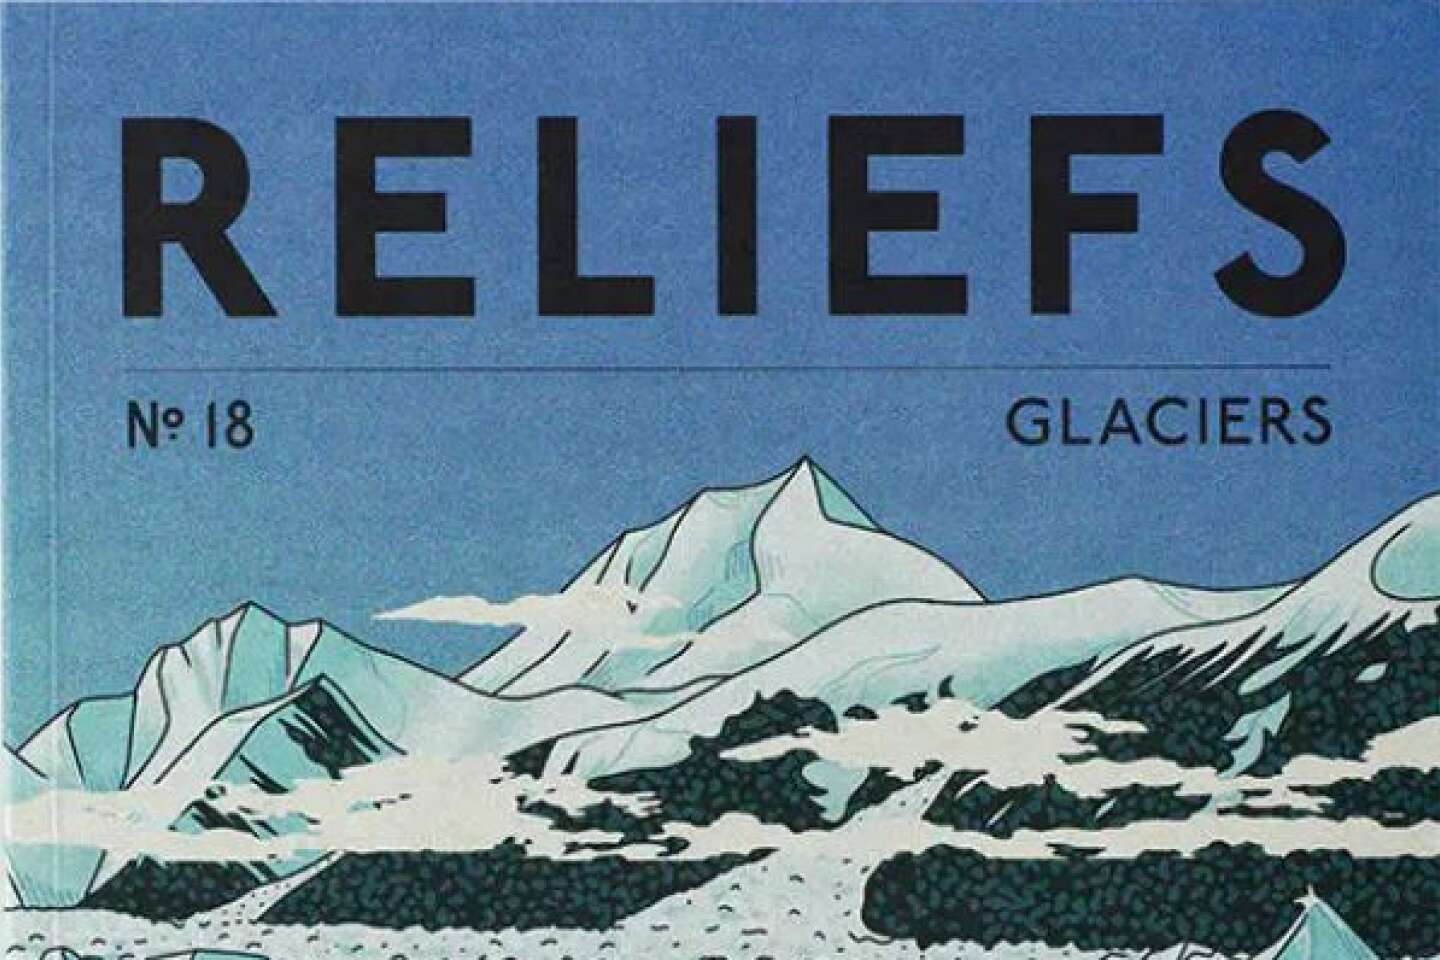 La revue « Reliefs » révèle le goût des glaciers